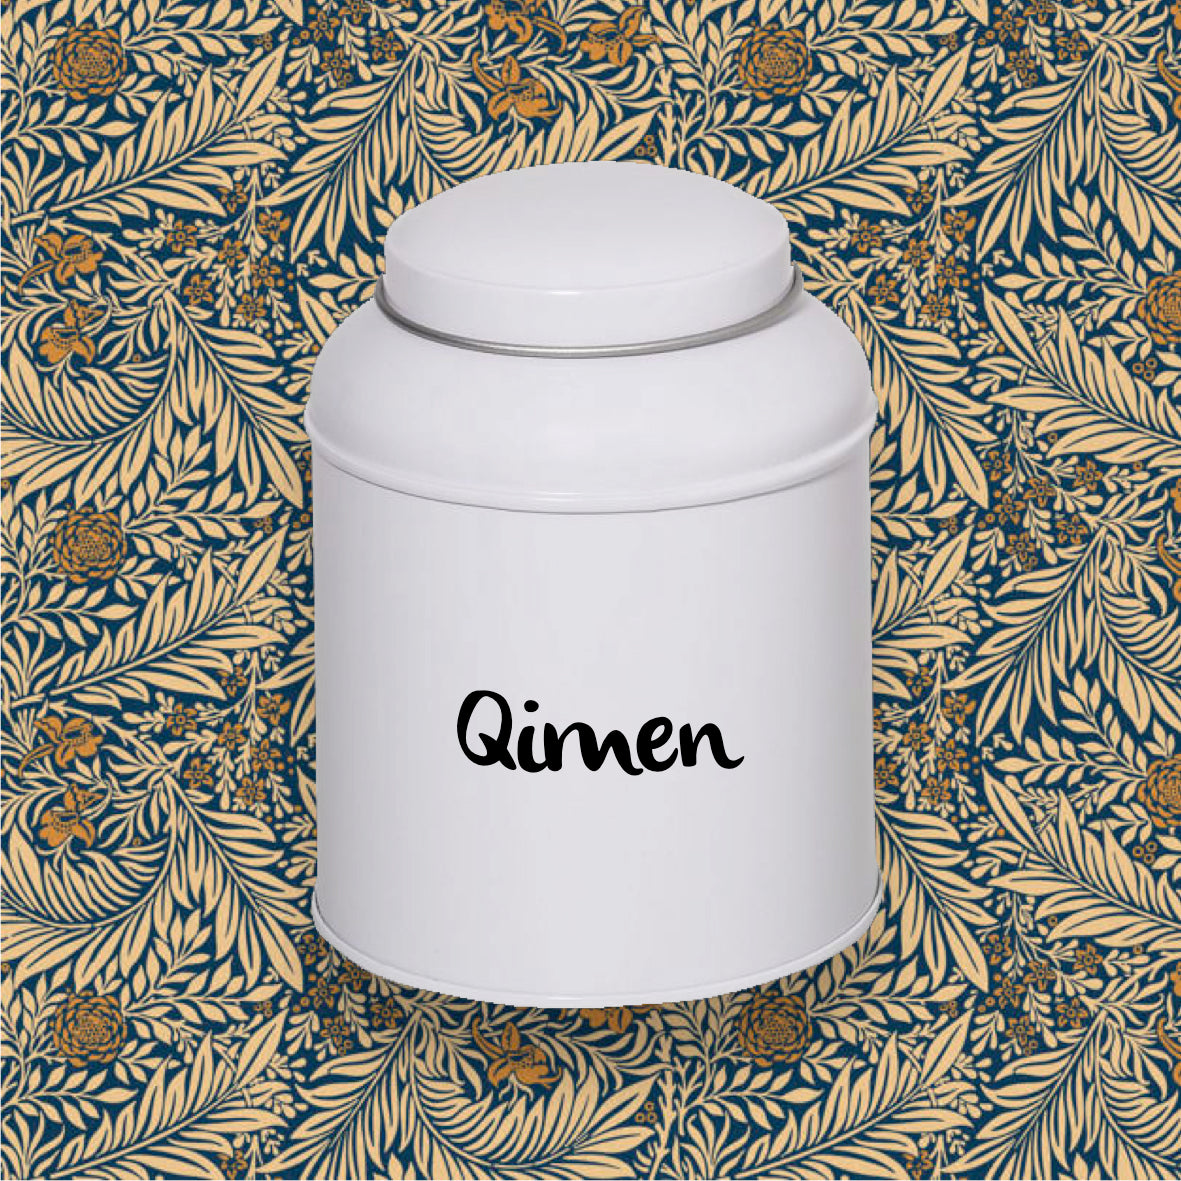 Qimen - Keemun - Fleur de Thé Boutique